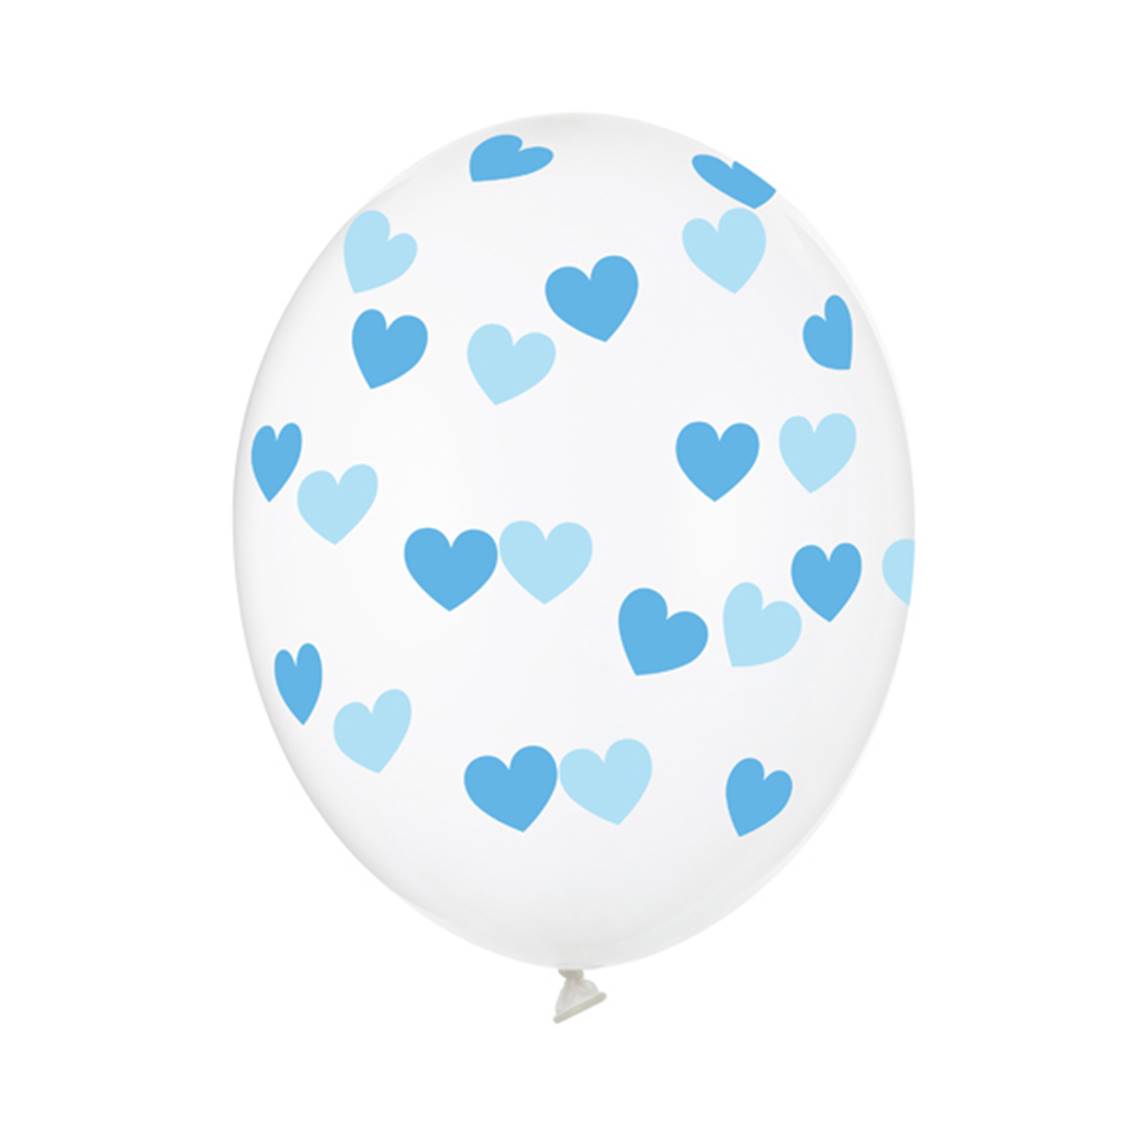 Balónky průhledné modrá srdce 50 ks